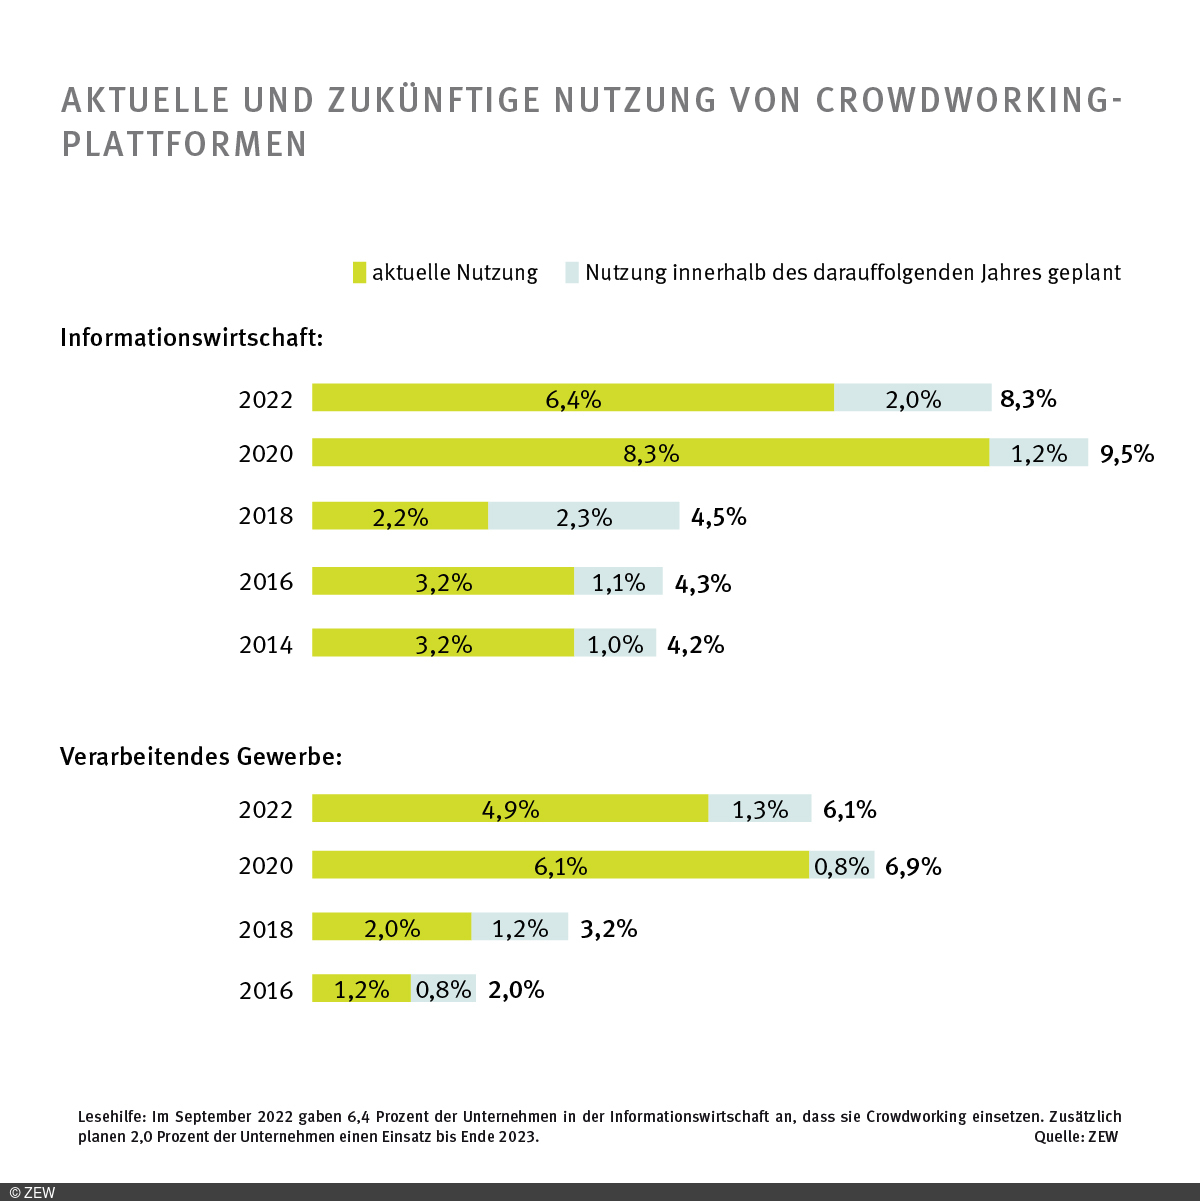 Balkendiagramm aktuelle und zukünftige Nutzung von Crowdworking-Plattformen, unterteilt nach den Branchen Informationswirtschaft und Verarbeitendes Gewerbe und darunter nach Jahren, 2014–22, in Zwei-Jahres-Schritten